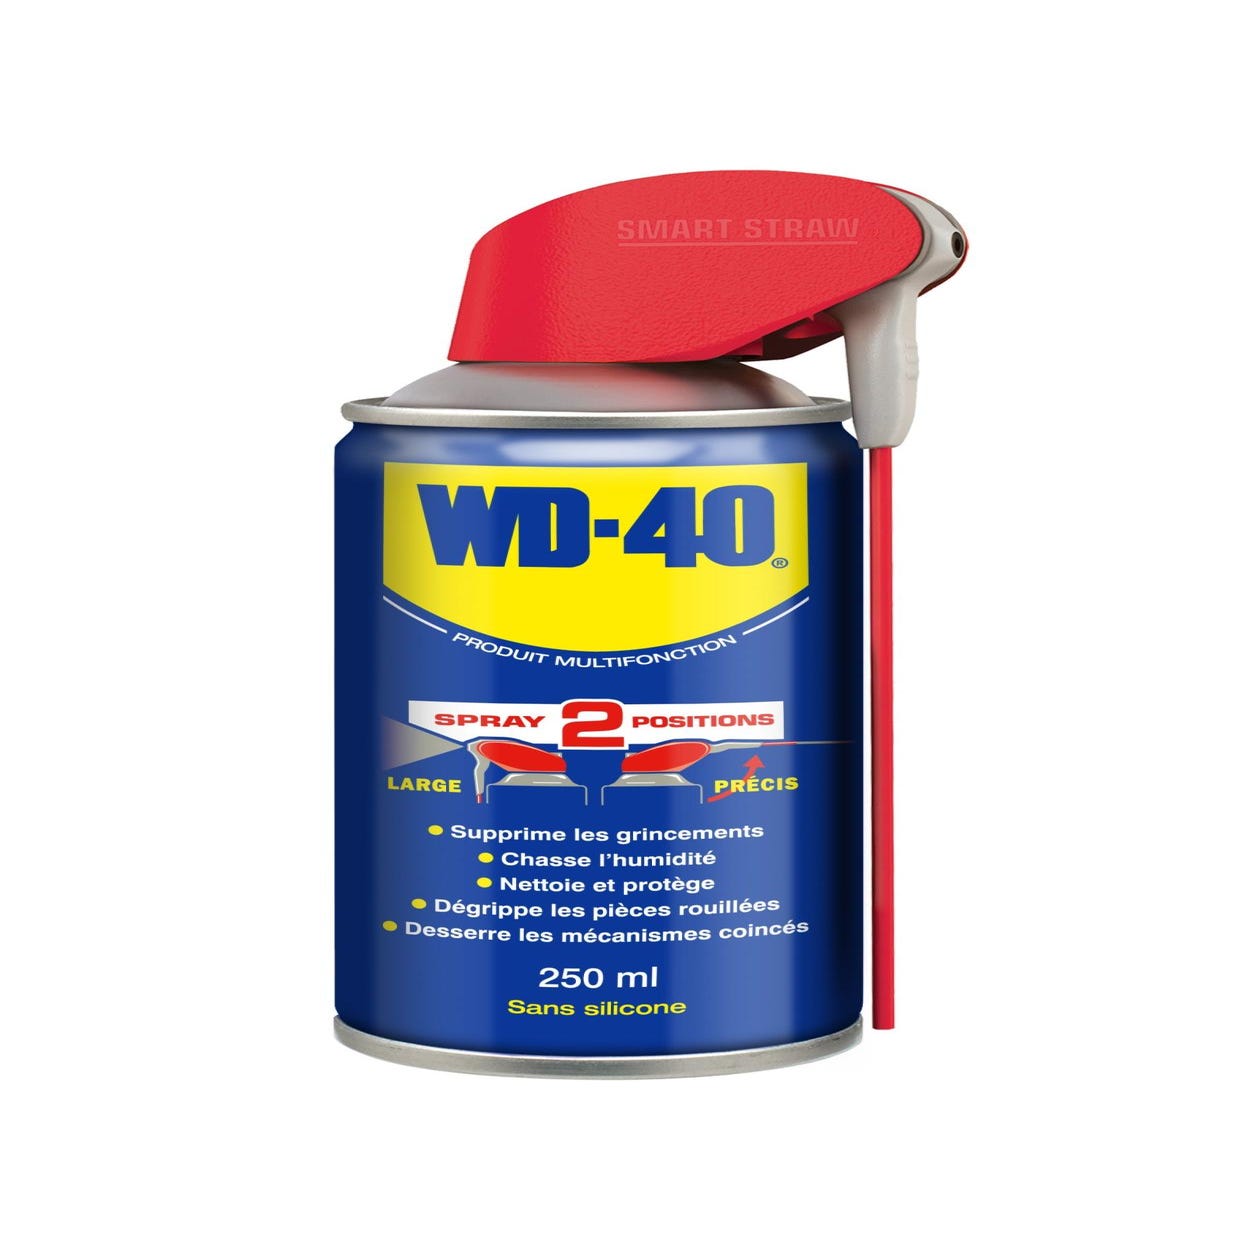 Lubrifiant serrure WD-40 , Aérosol 250 ml